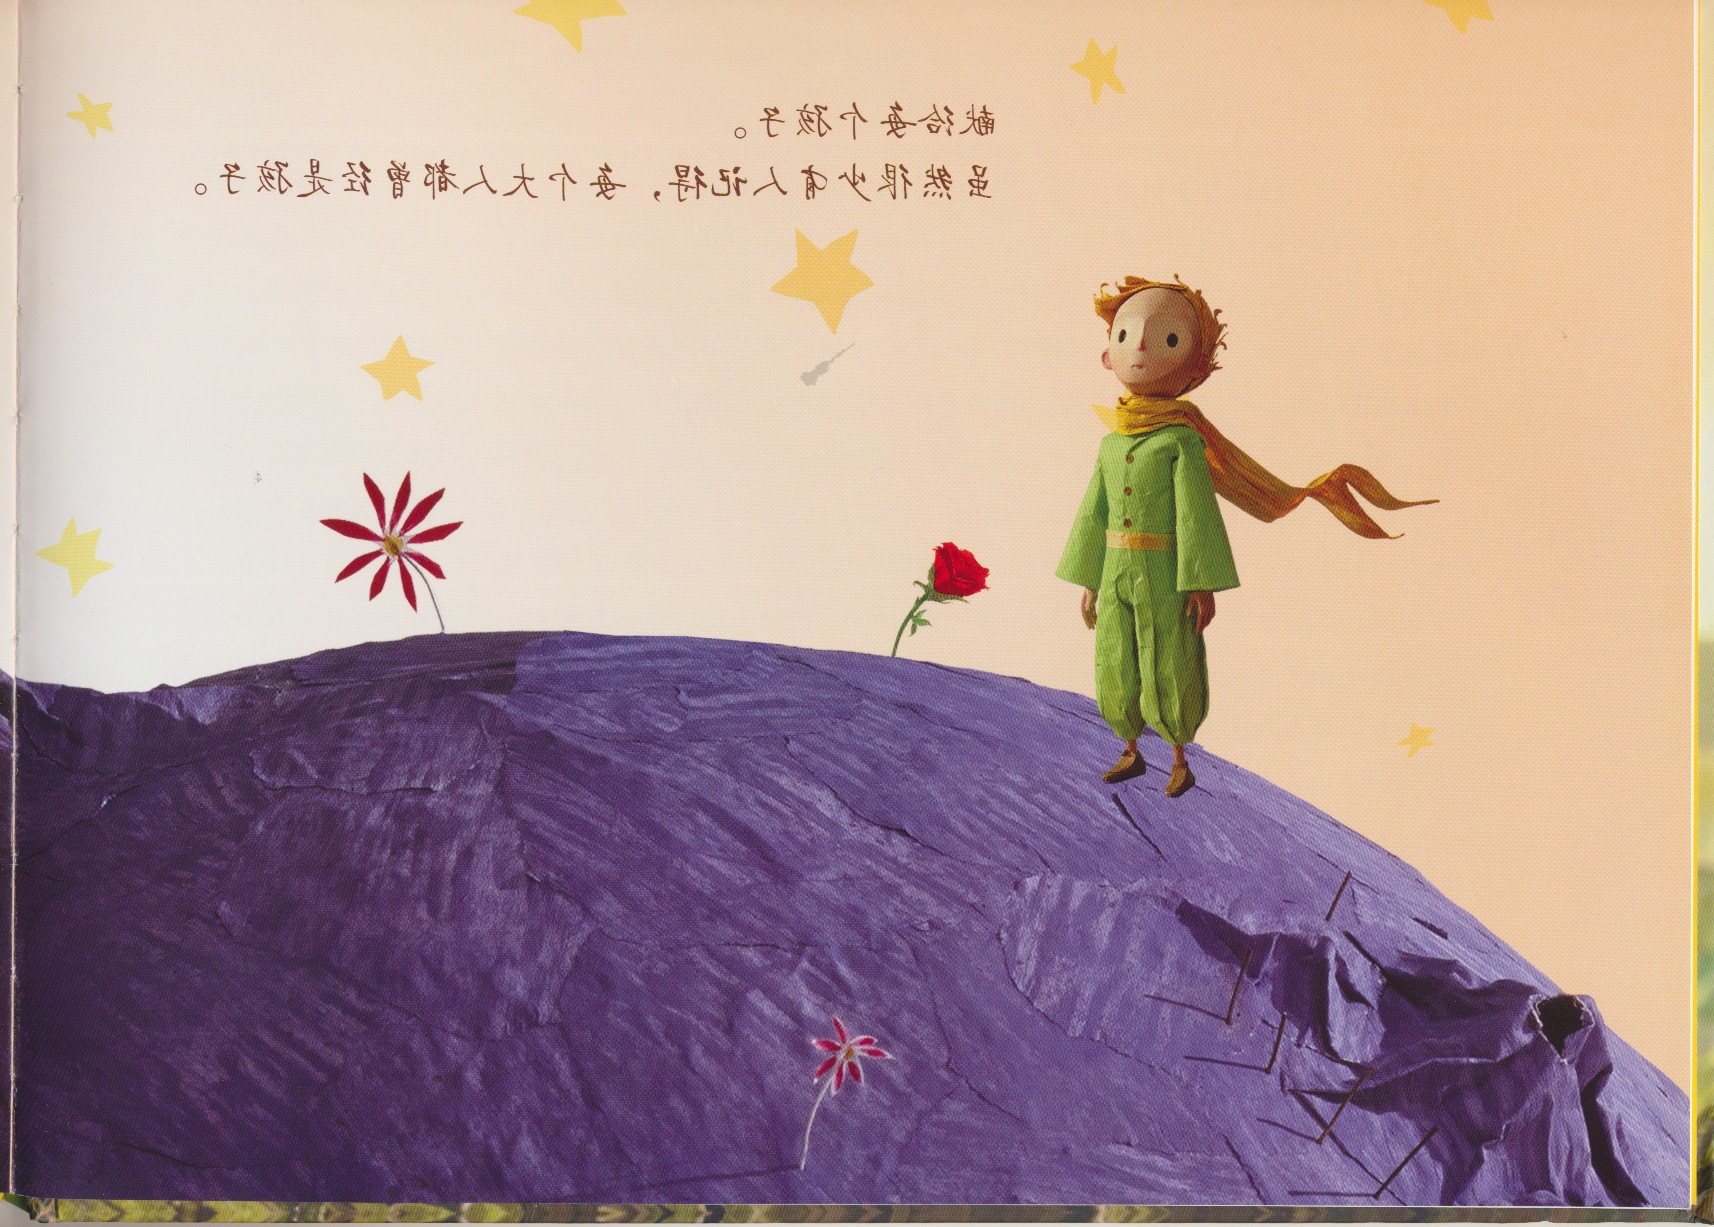 小王子 (05),绘本,绘本故事,绘本阅读,故事书,童书,图画书,课外阅读